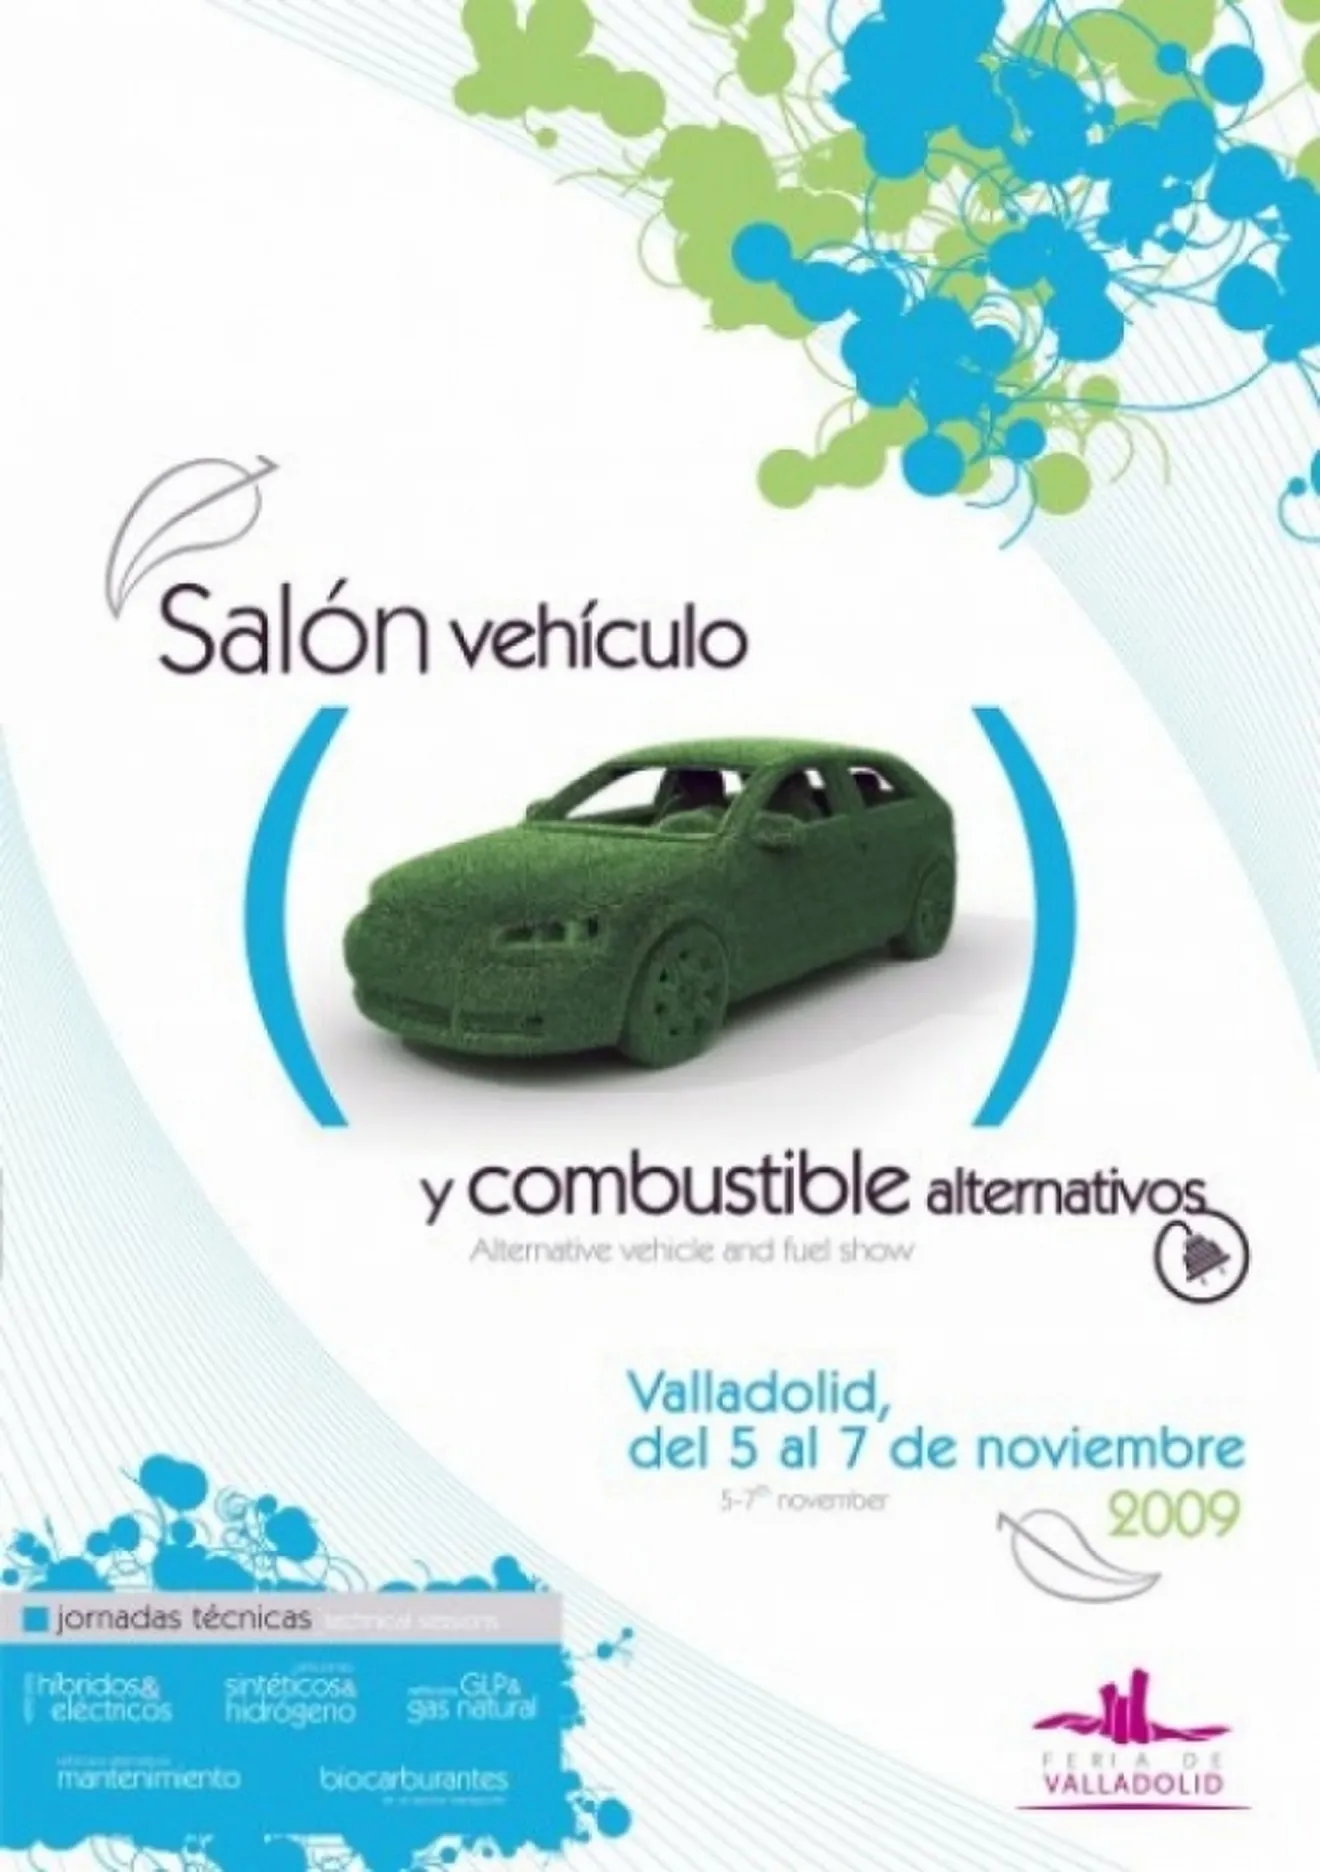 La Feria de Valladolid celebrará en noviembre la primera edición del Salón del Vehículo y Combustible Alternativos